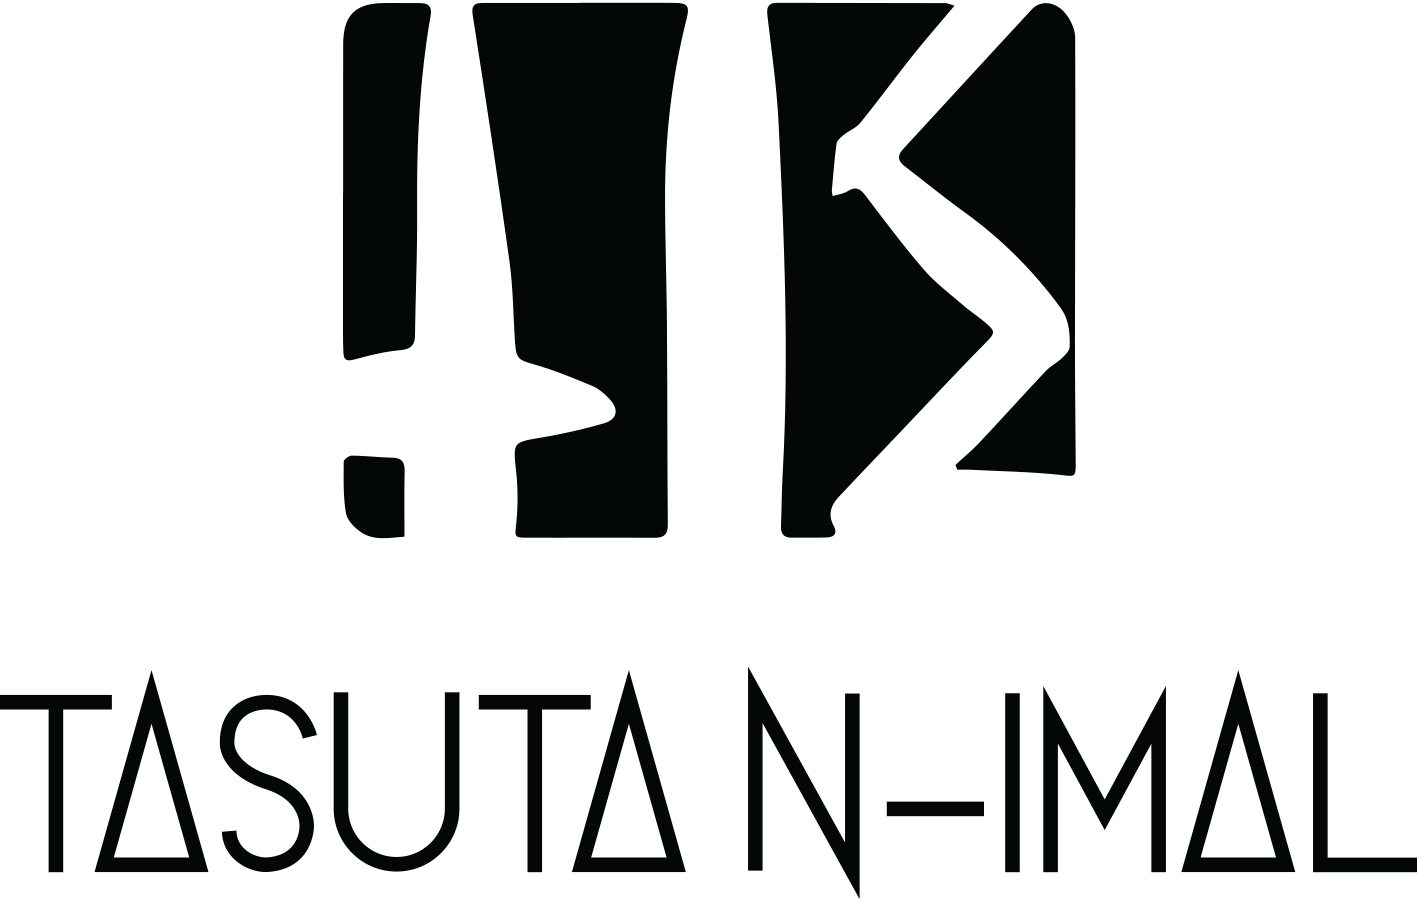 Tasuta N-Imal logo